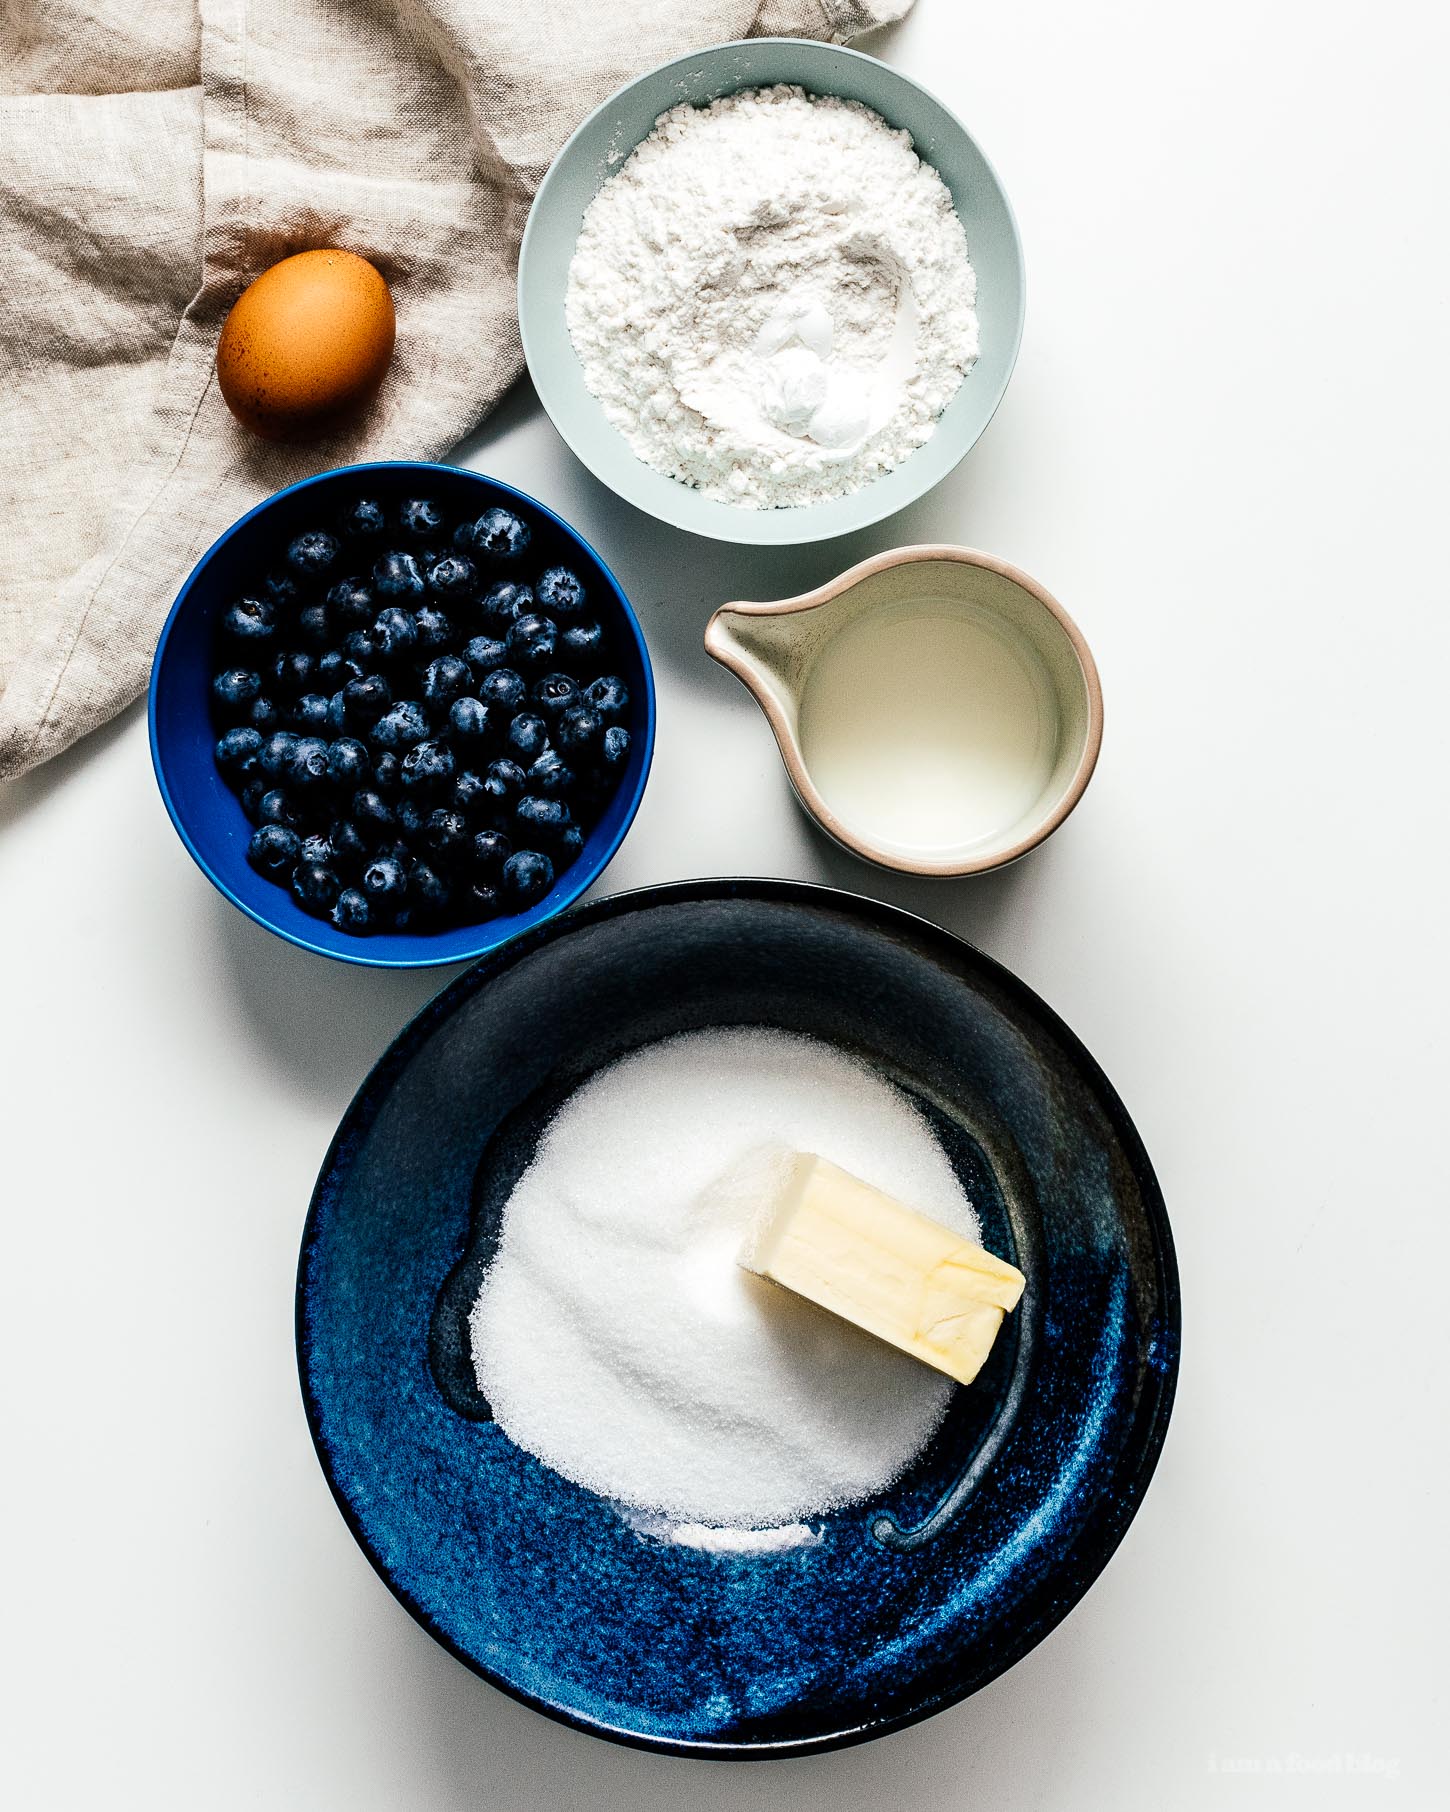 一个碗，还有个美味的奶油，蓝莓蛋糕，还有蓝莓，更好吃的味道。#蓝莓蓝莓###面包和奶油面包和松饼